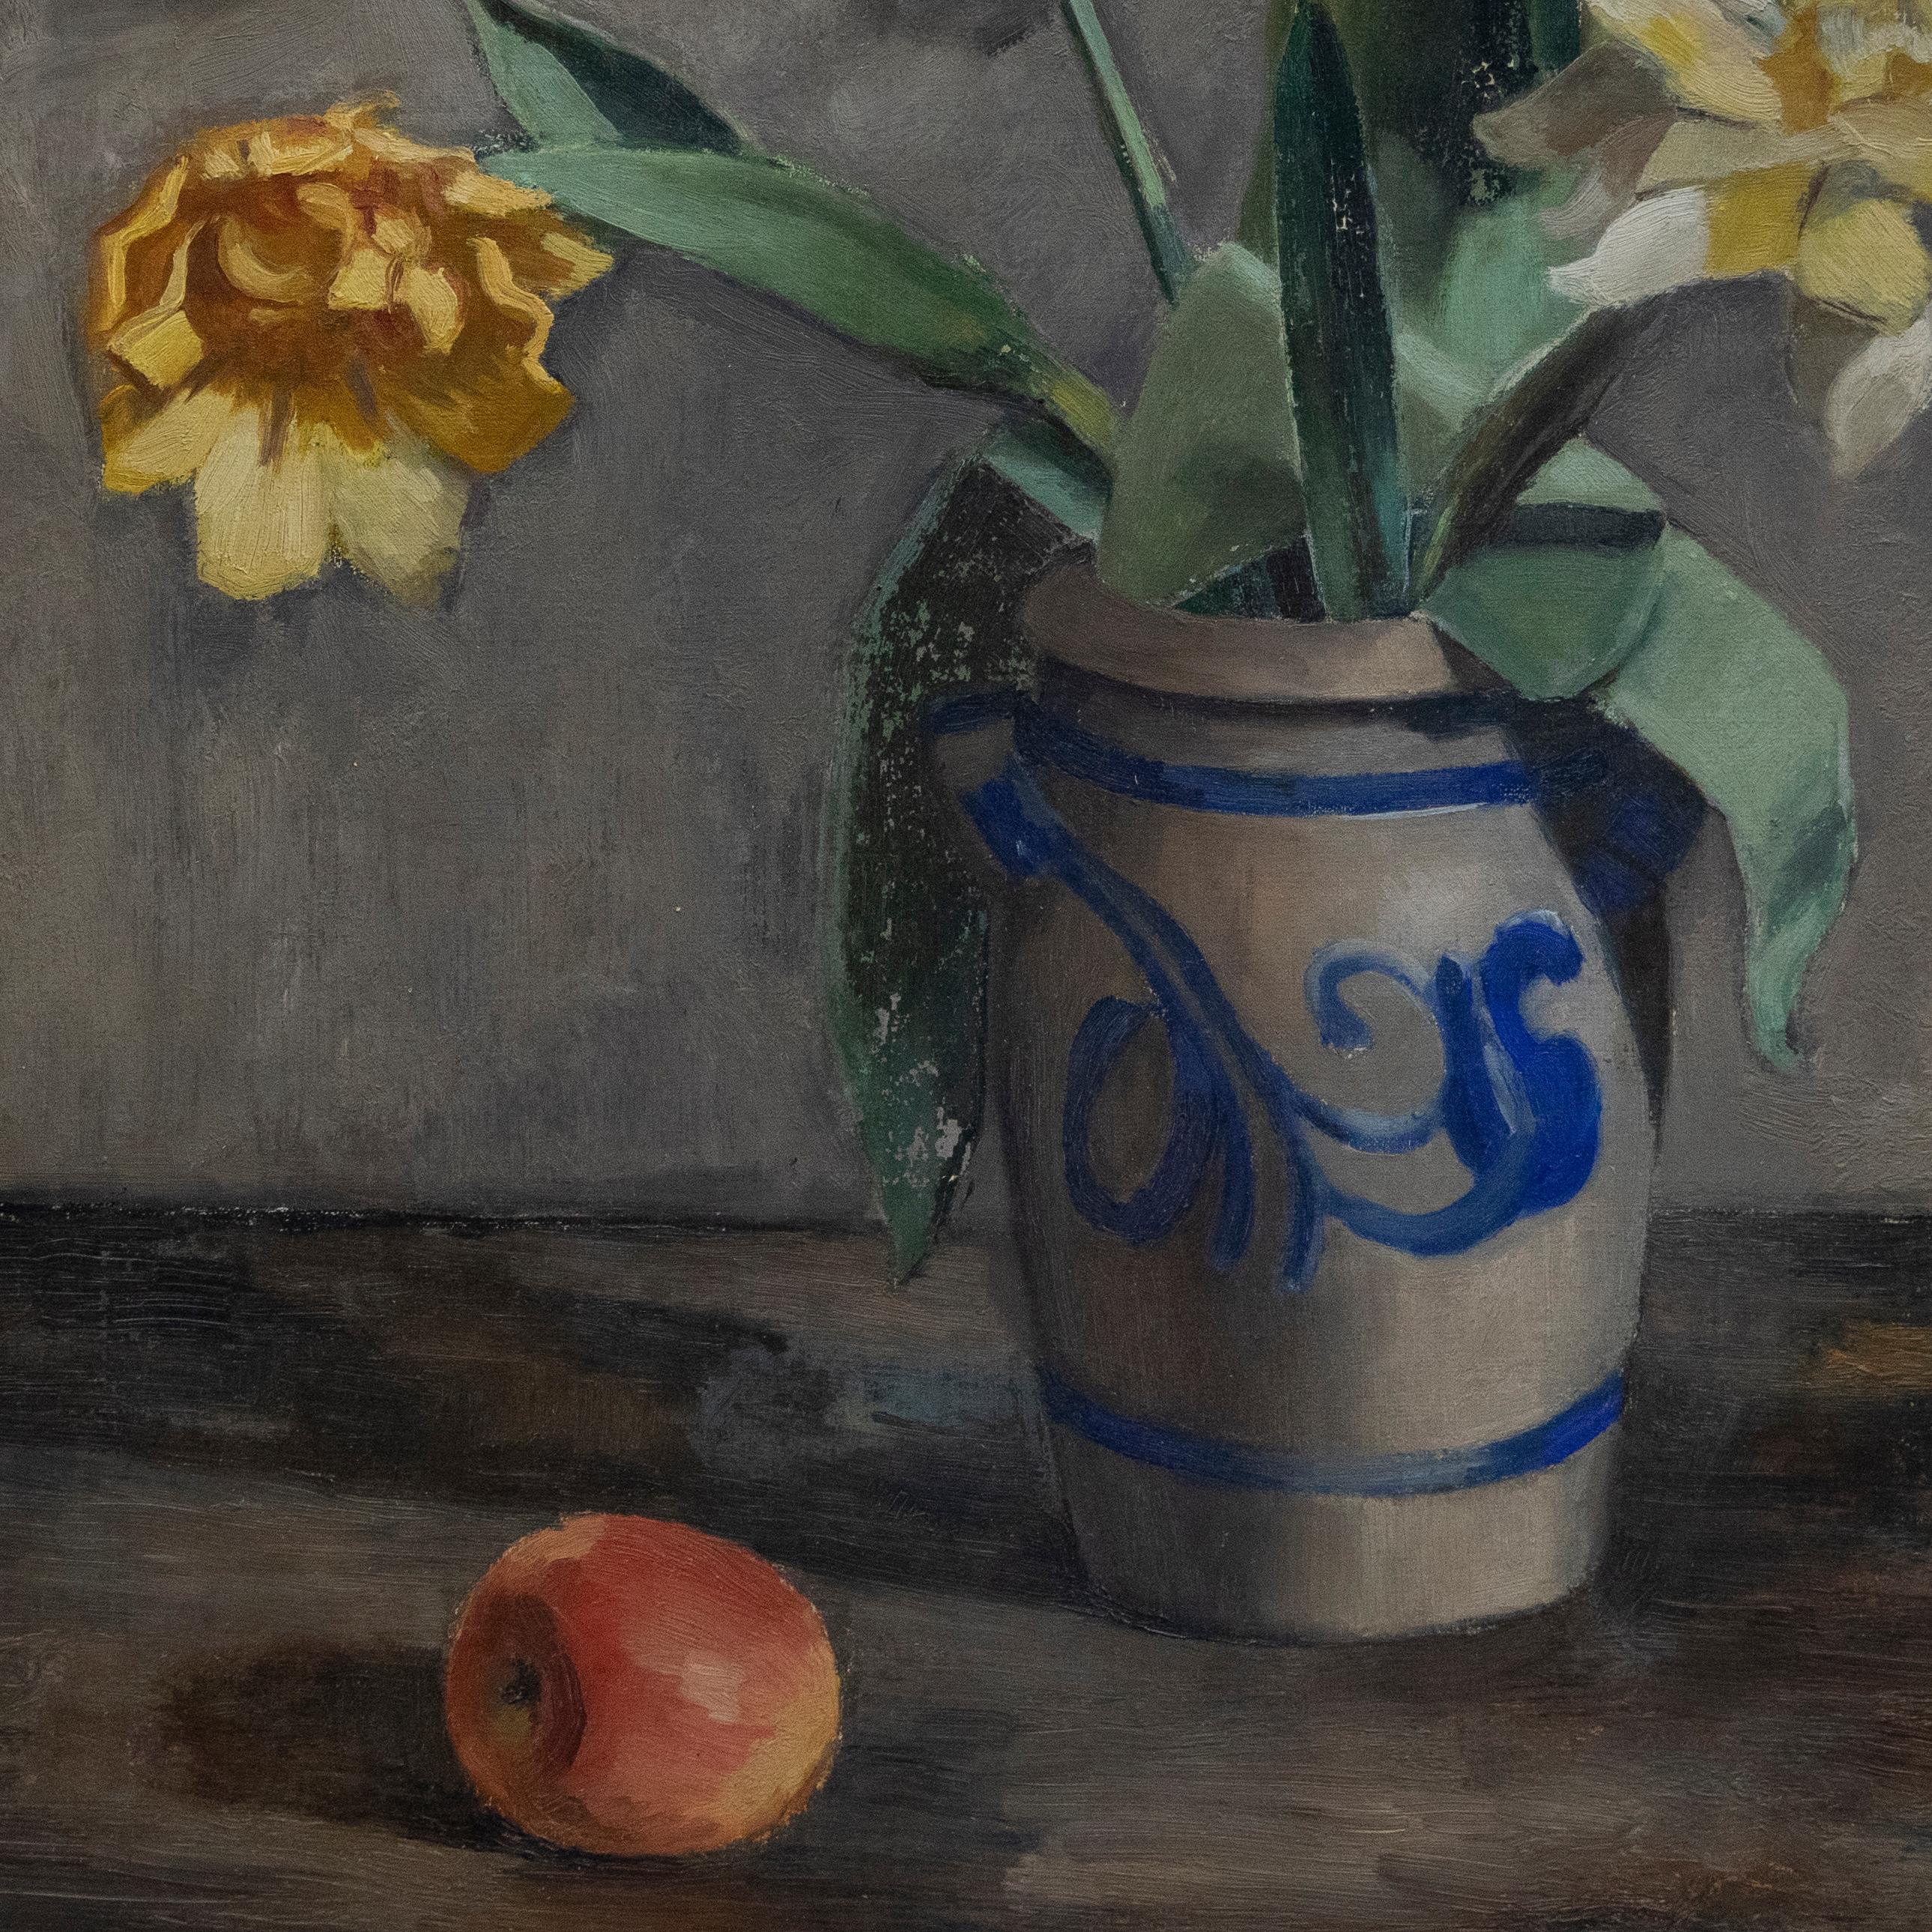 Charmante étude à l'huile de l'école suédoise représentant une poignée de fleurs printanières soigneusement placées dans un vase en porcelaine. Une pomme se trouve en bas à gauche de la composition pour donner une échelle. Signé en bas à droite.